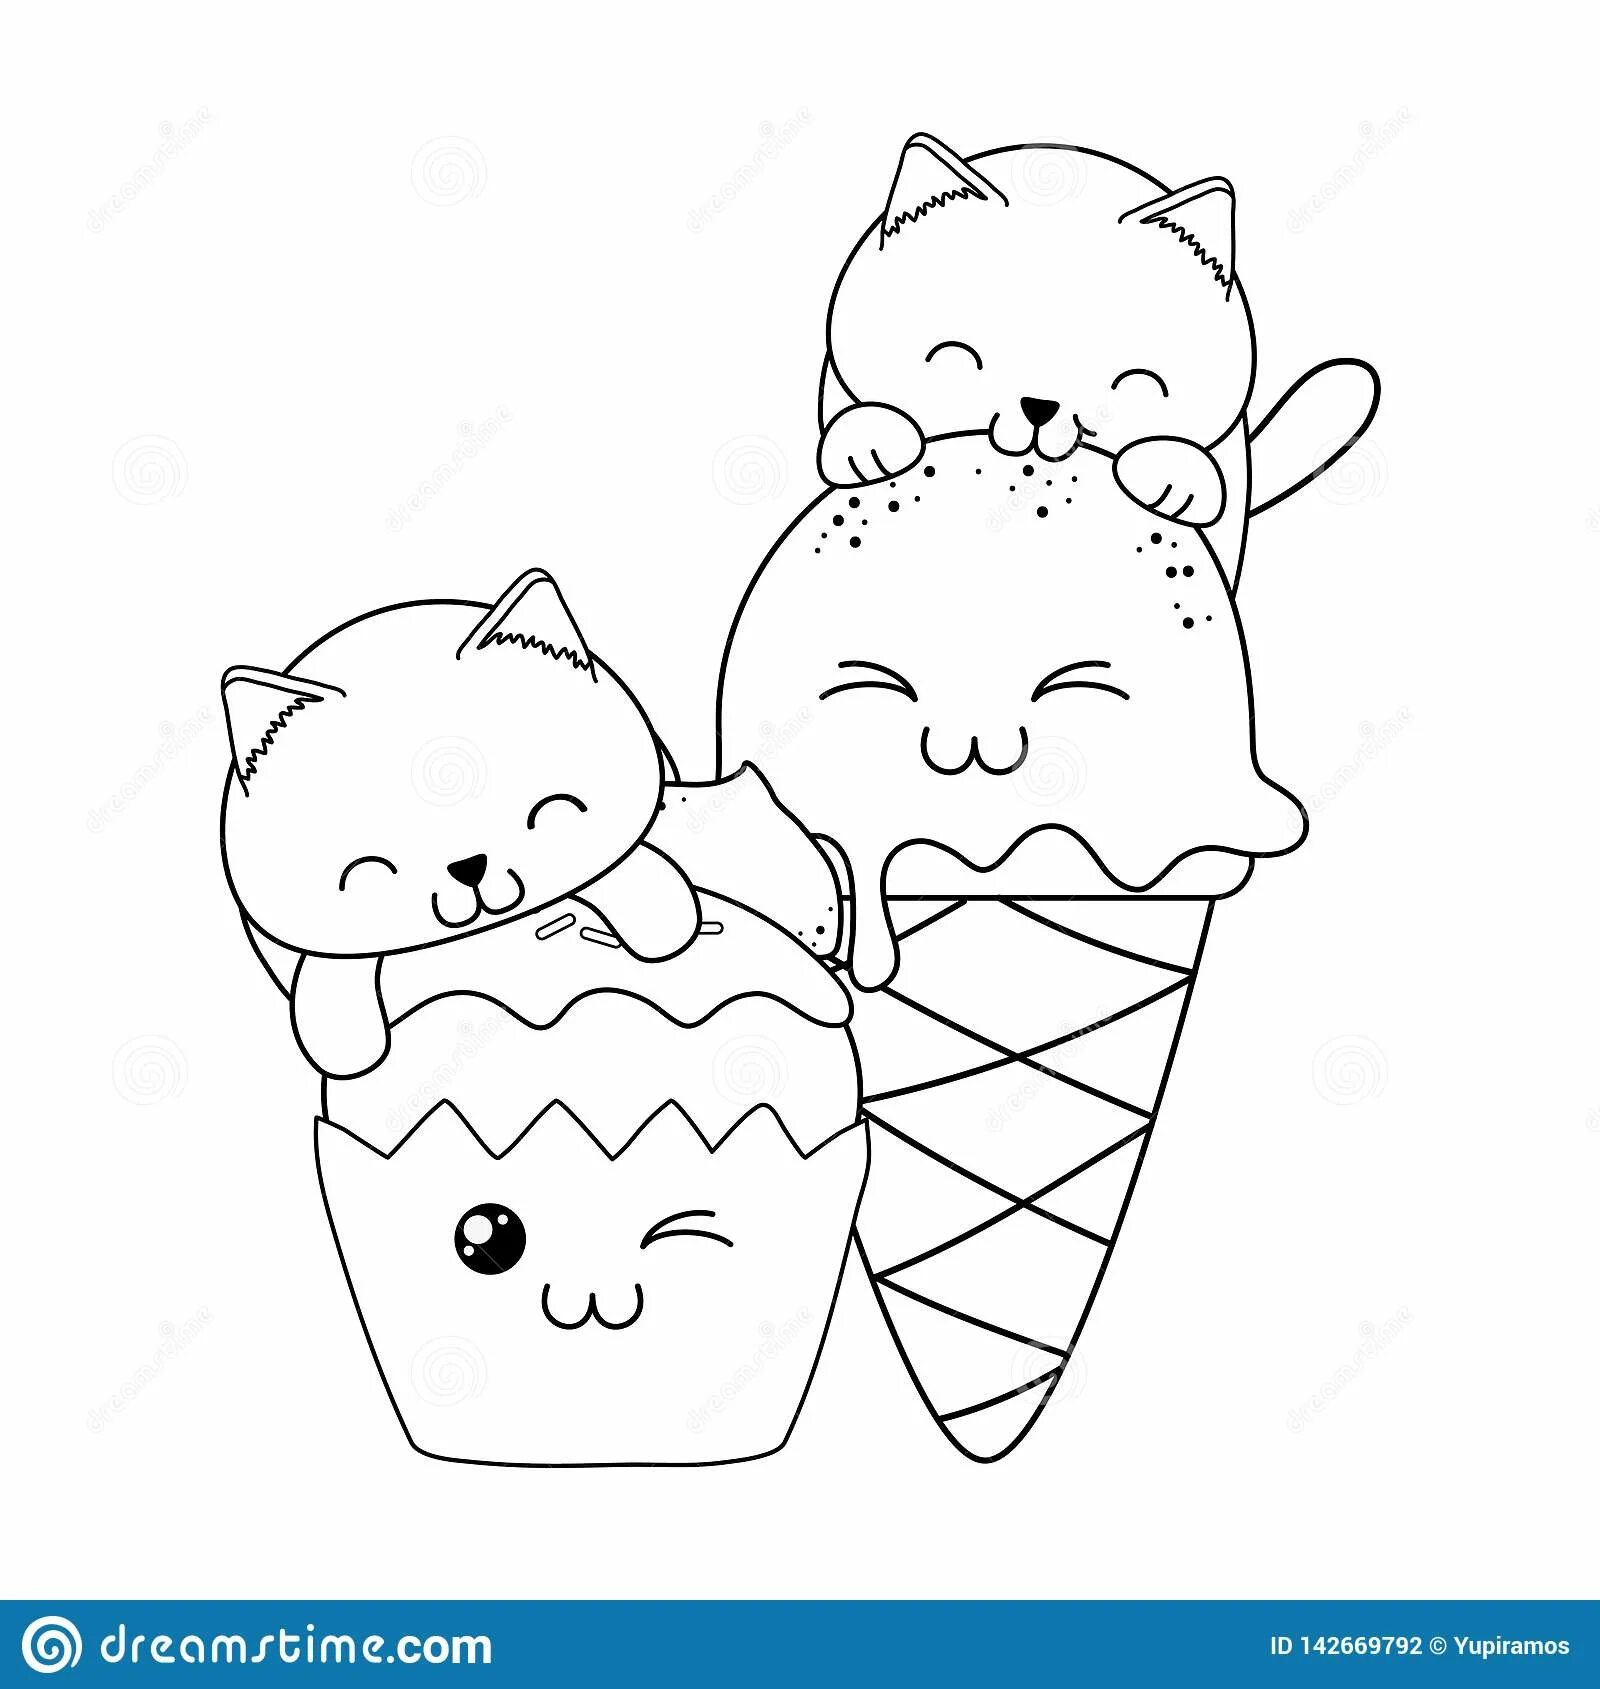 Cat ice cream #4